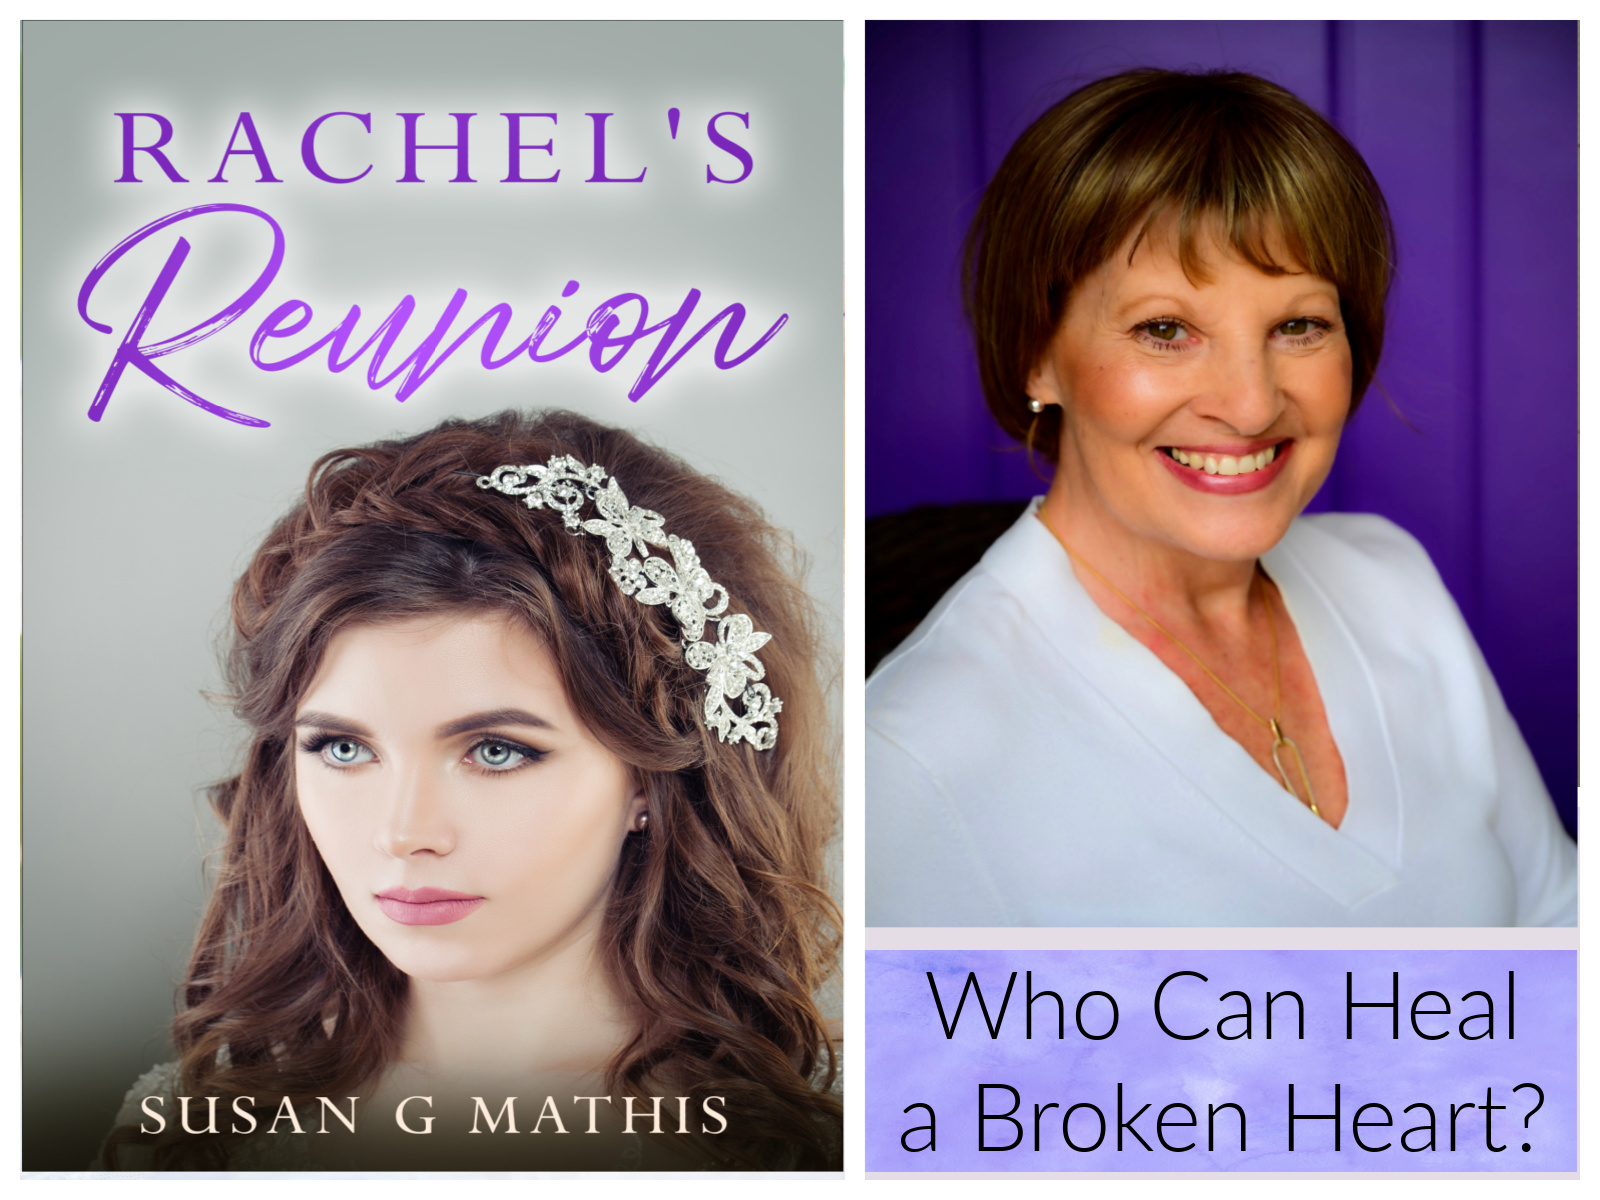 ALT="Susan Mathis and book Rachel's Reunion"